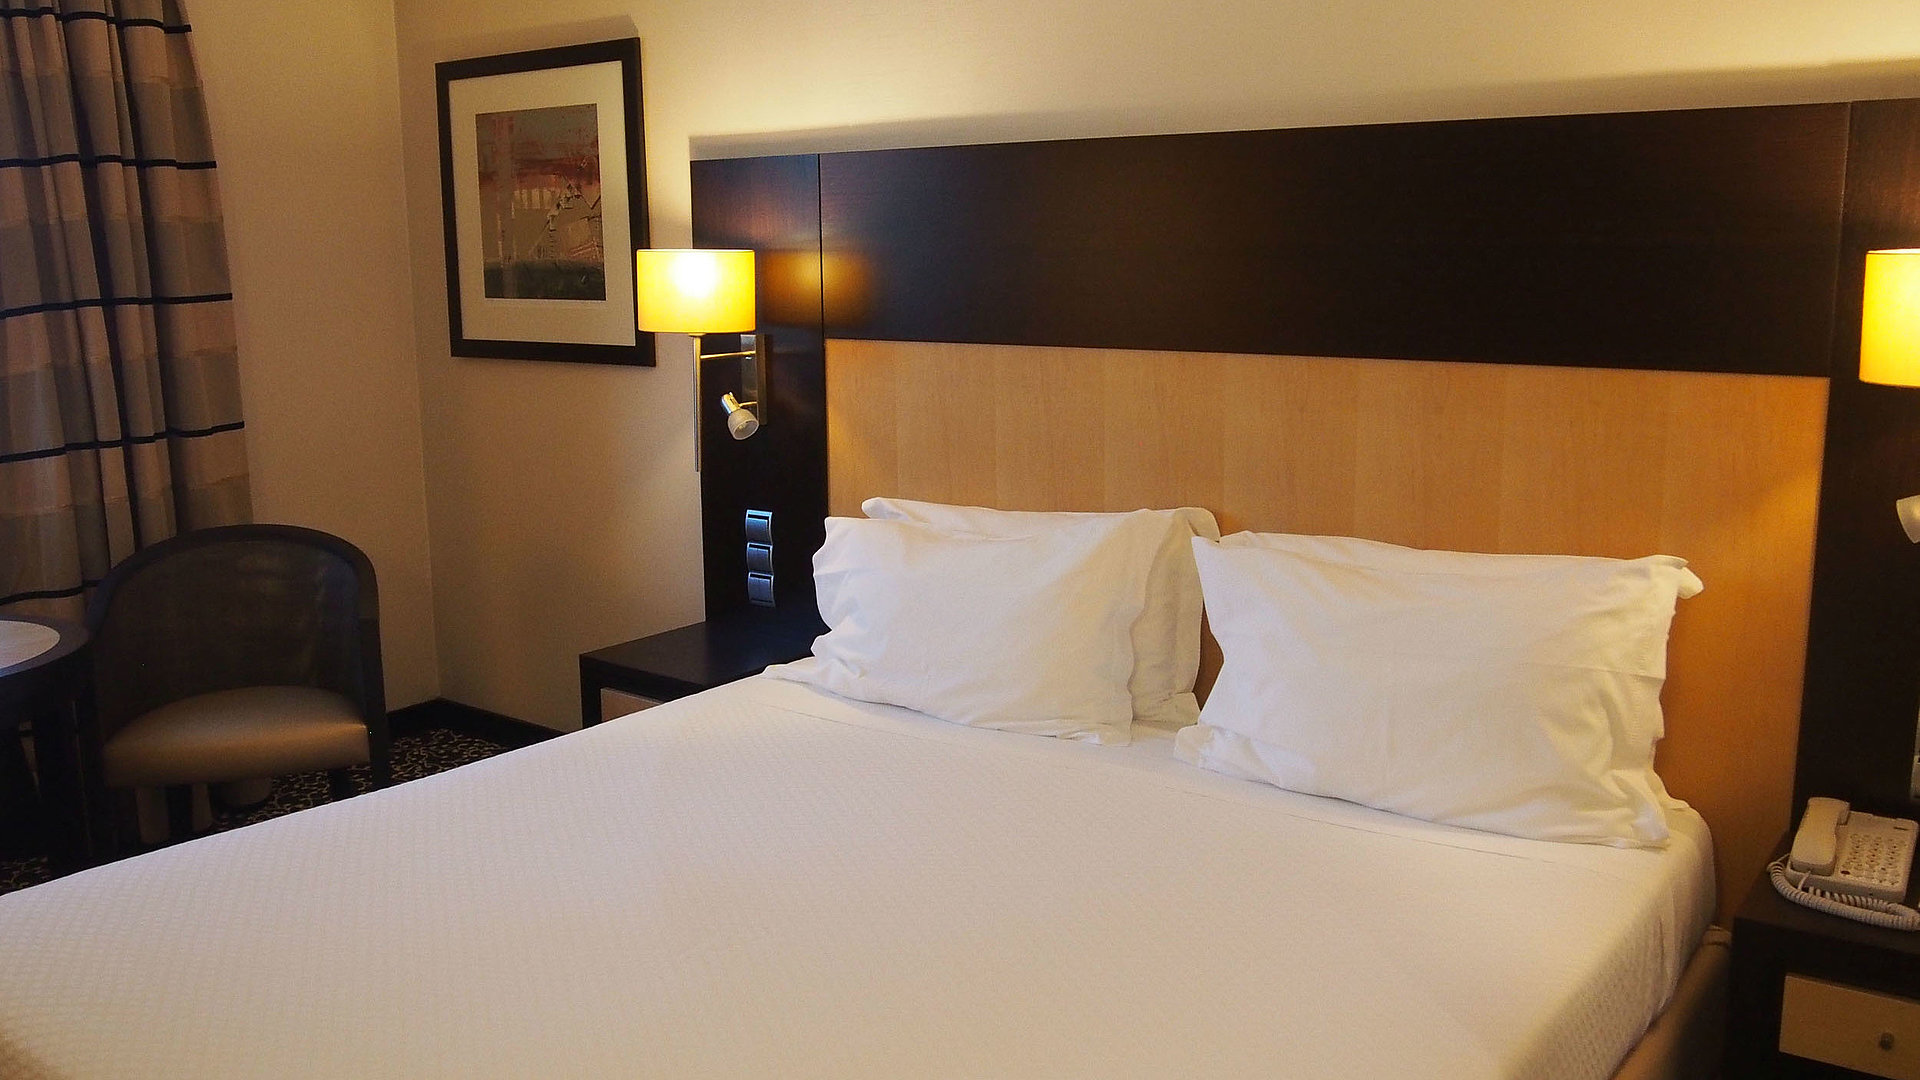 Unterkünfte für Geschäftsreisende in der Fränkischen Schweiz - Hotelzimmer mit Doppelbett